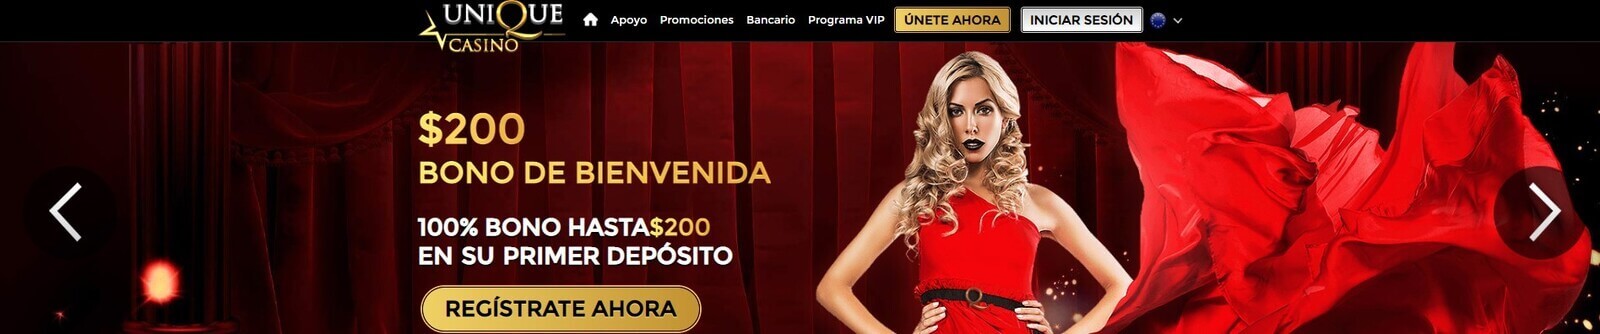 Página web de Unique Casino online en Paraguay